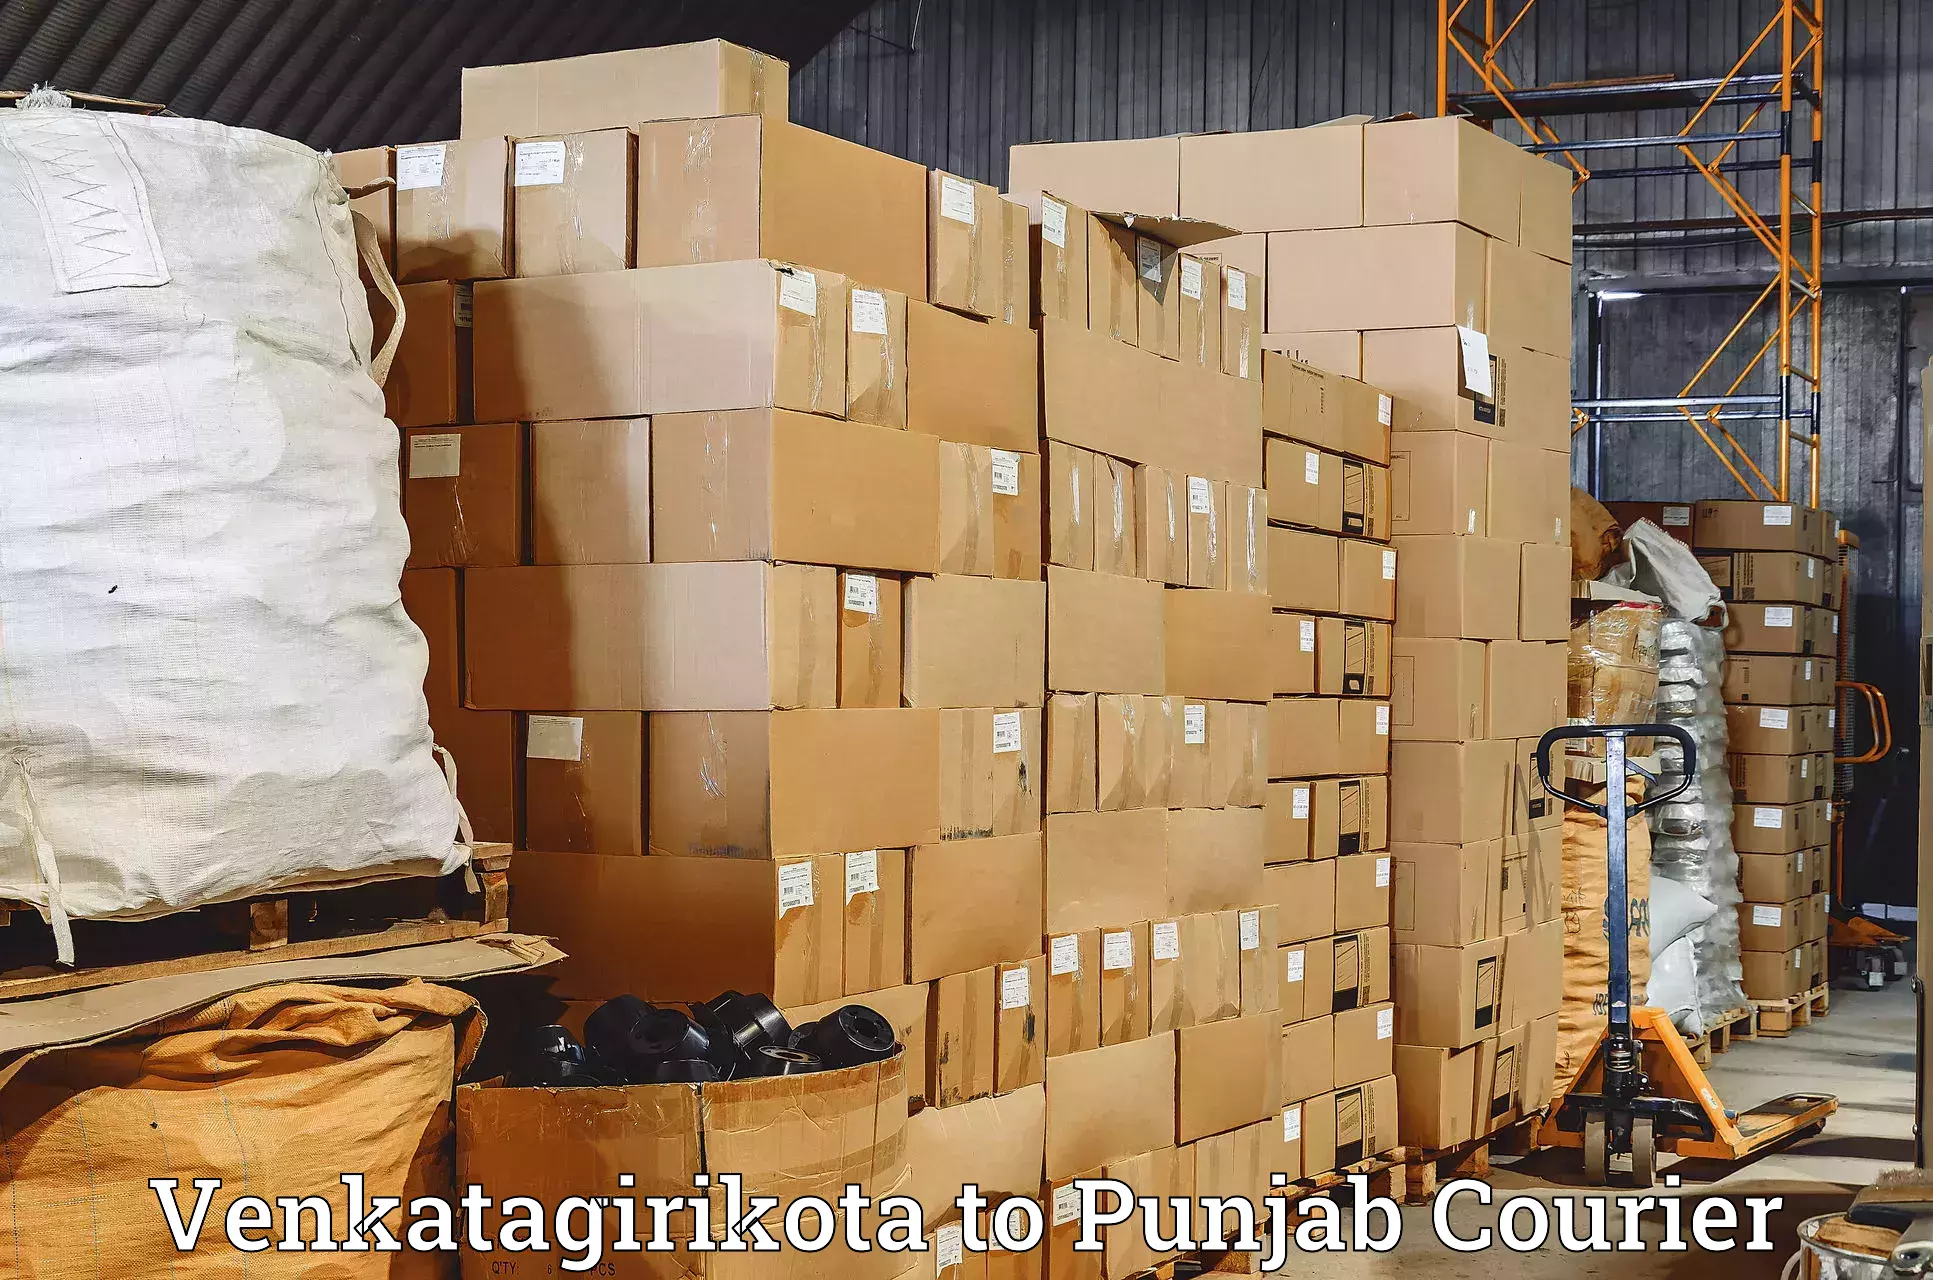 Quality courier services Venkatagirikota to Punjab